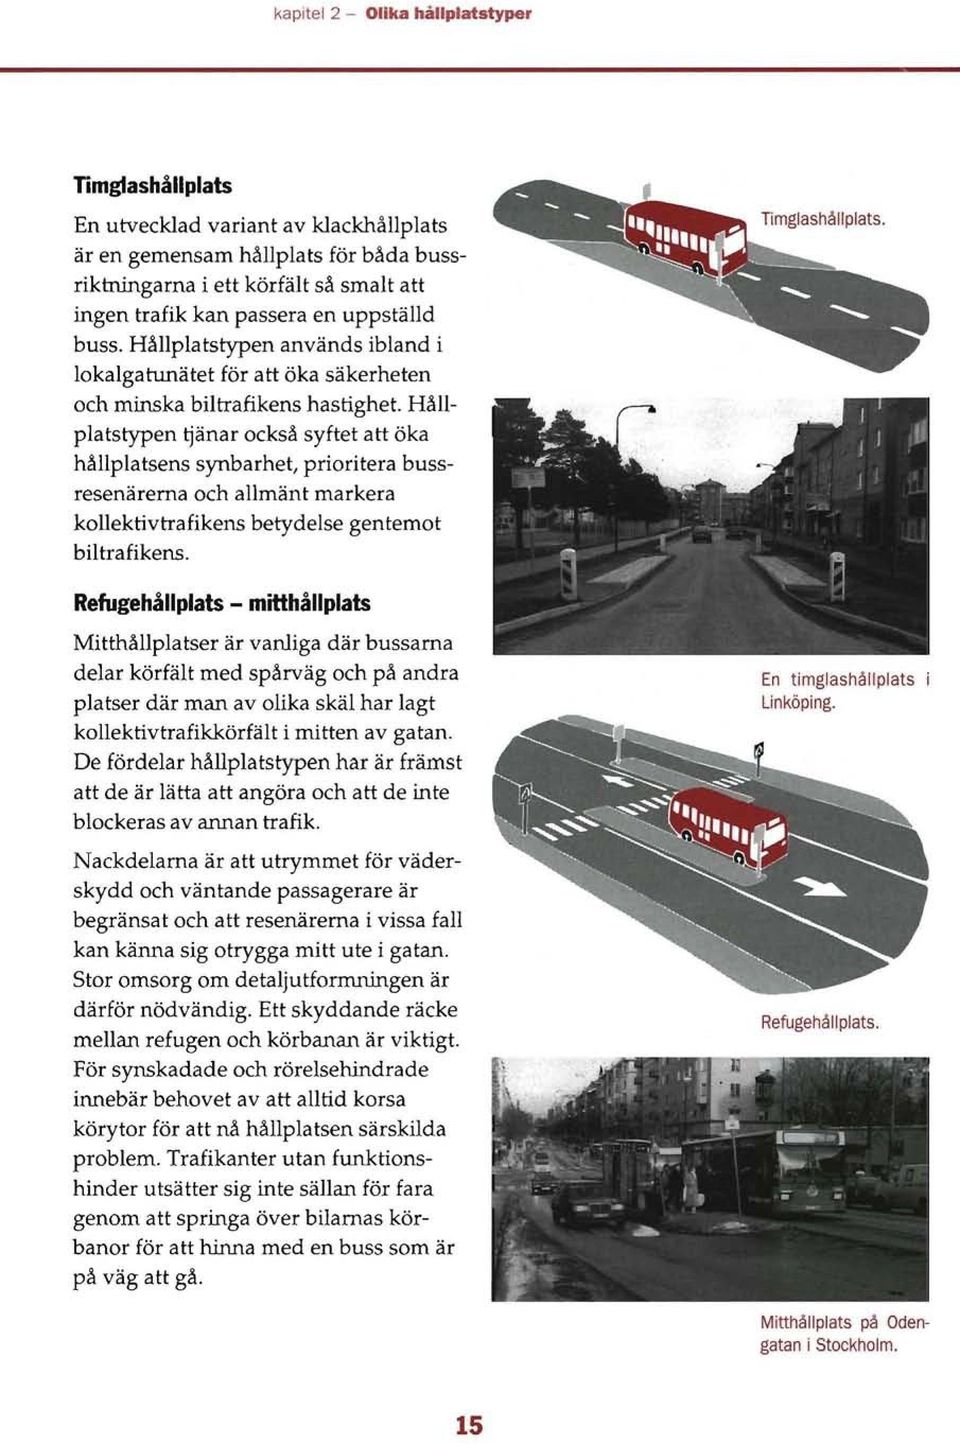 Hållplatstypen ~änar också syftet att öka hållplatsens synbarhet, prioritera bussresenärerna och allmänt markera kollektivtrafikens betydelse gentemot biltrafikens.